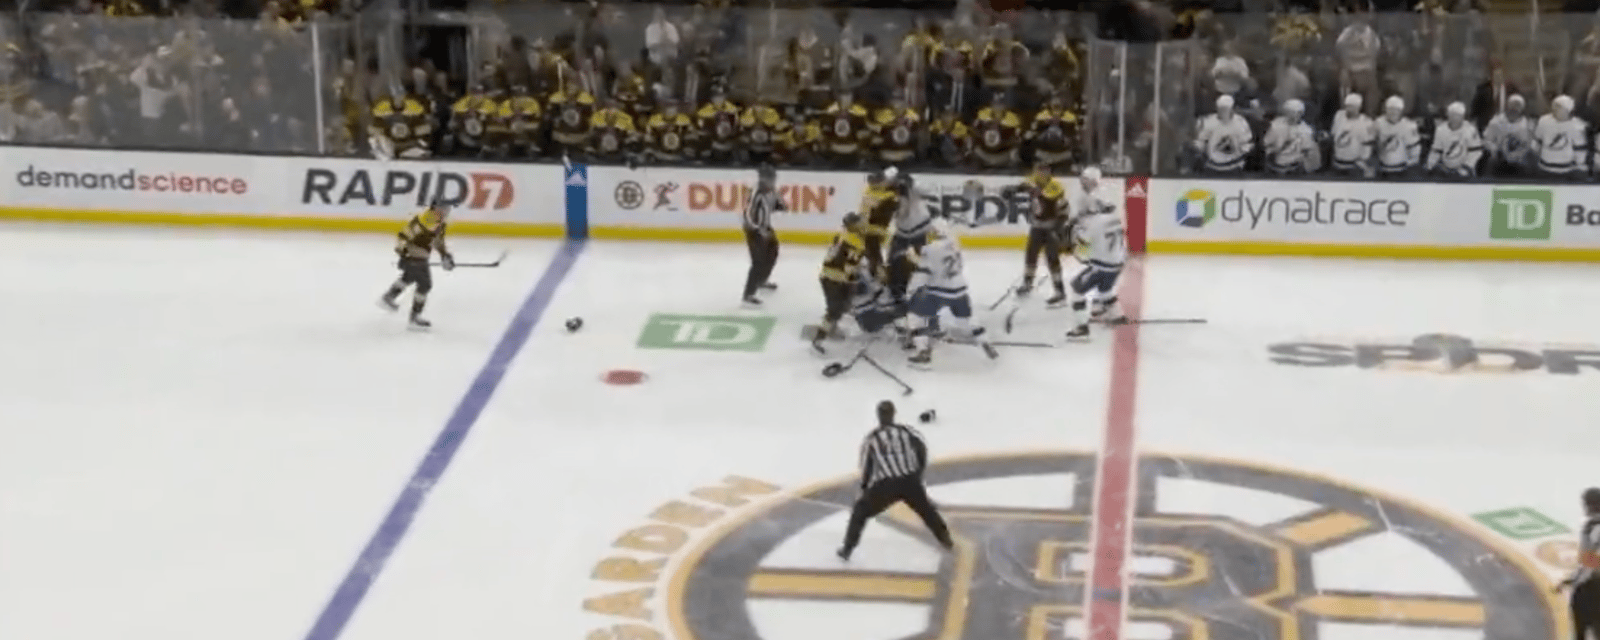 La foire éclate entre les Bruins et le Lightning après 9 secondes de jeu